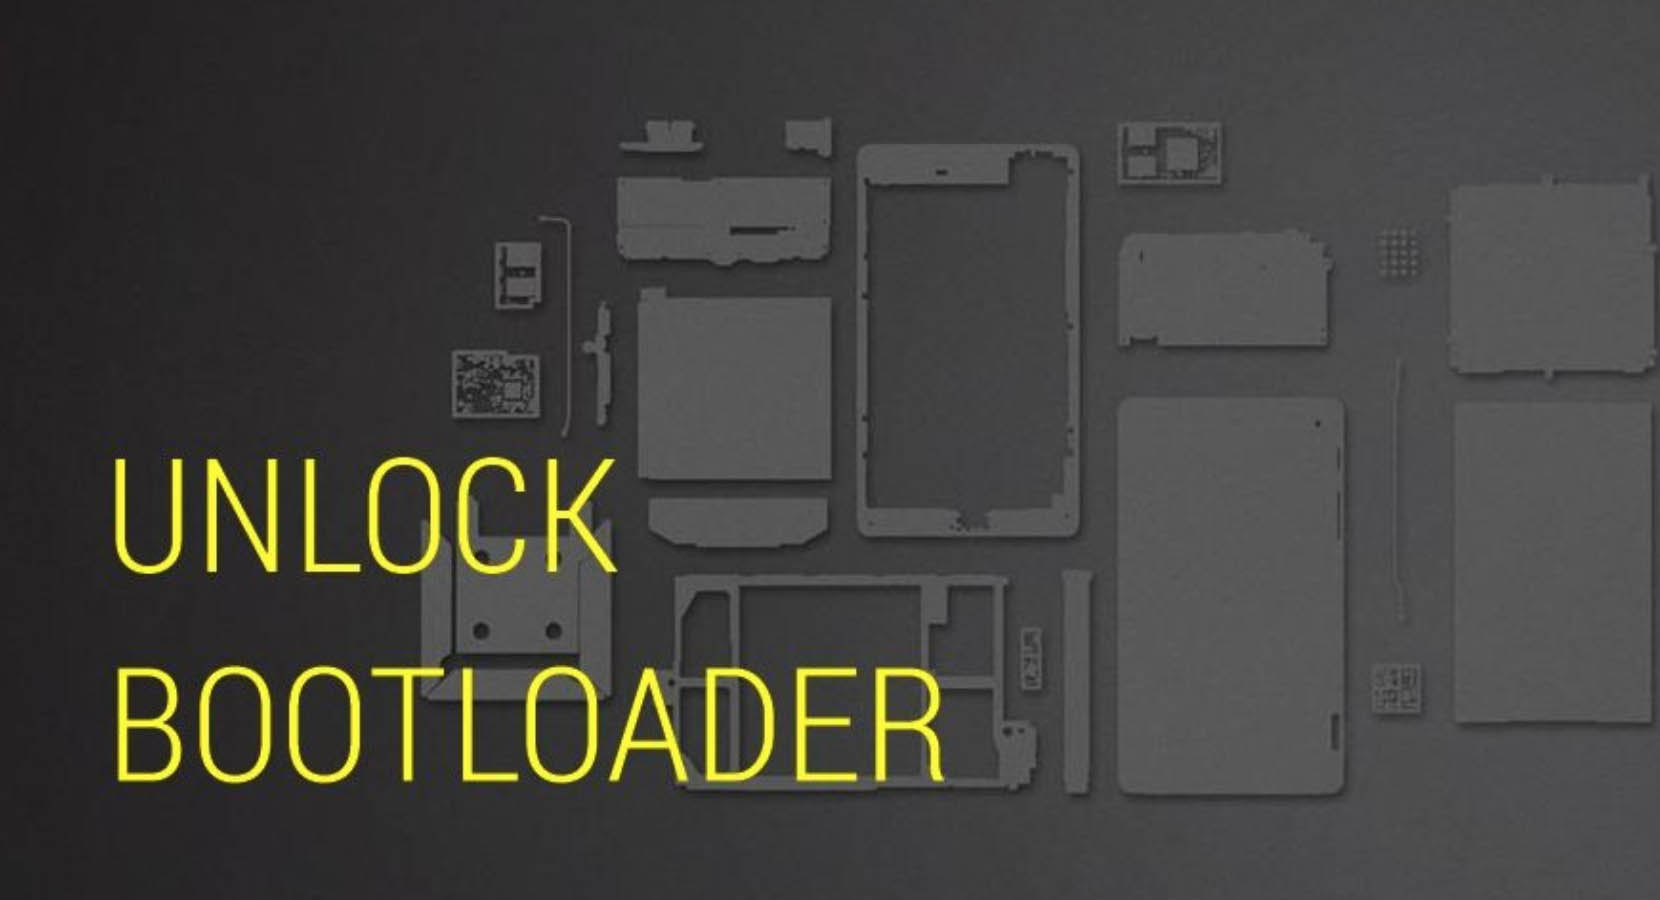 unlock bootloader code generator tool